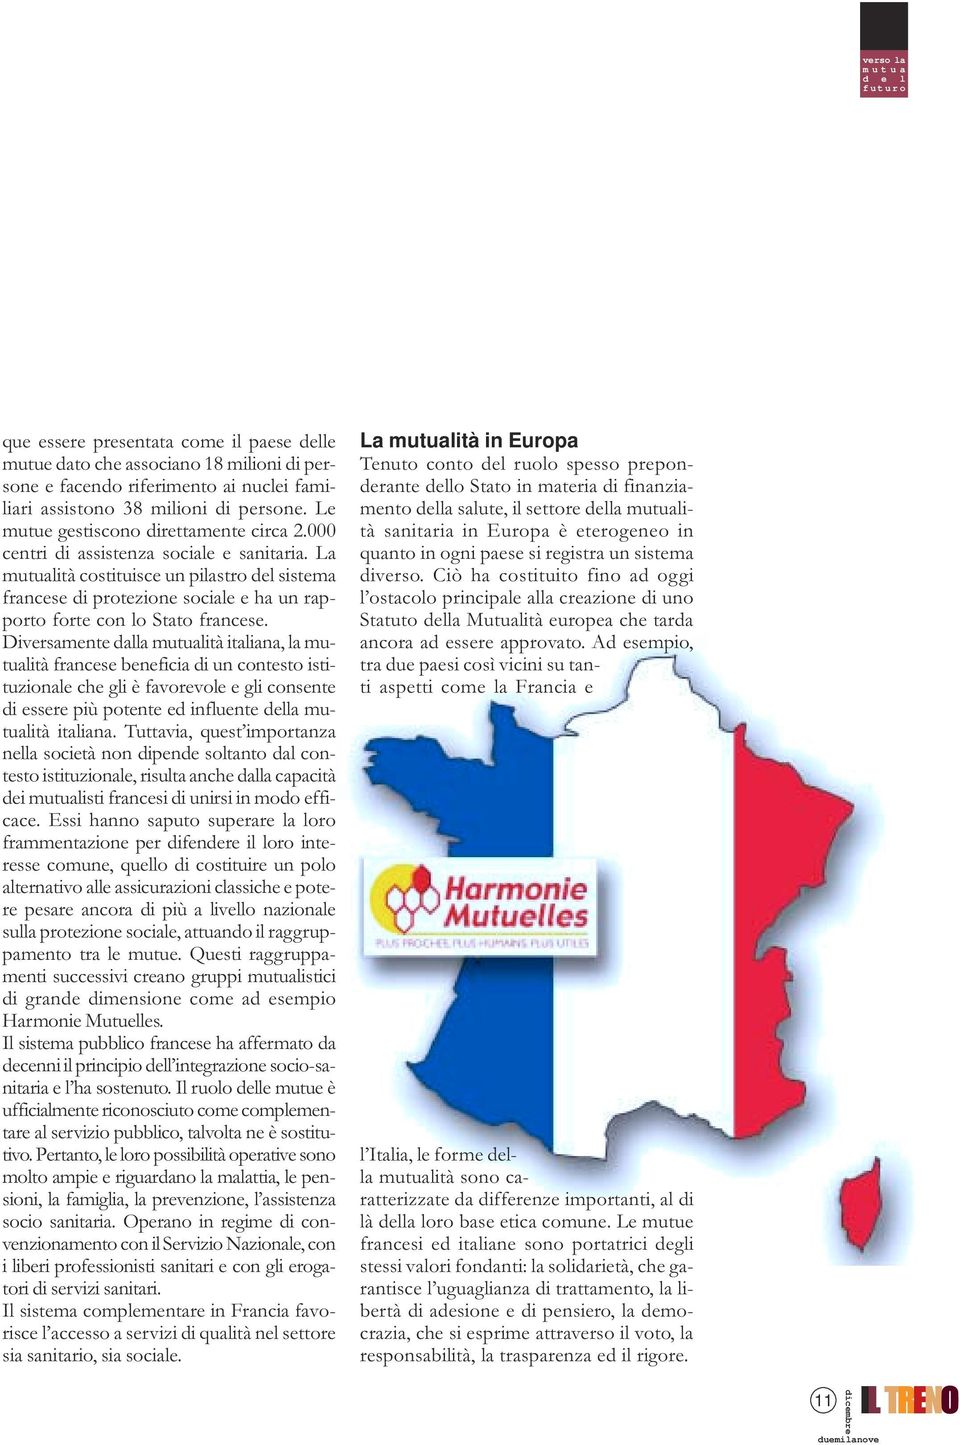 La mutualità costituisce un pilastro del sistema francese di protezione sociale e ha un rapporto forte con lo Stato francese.